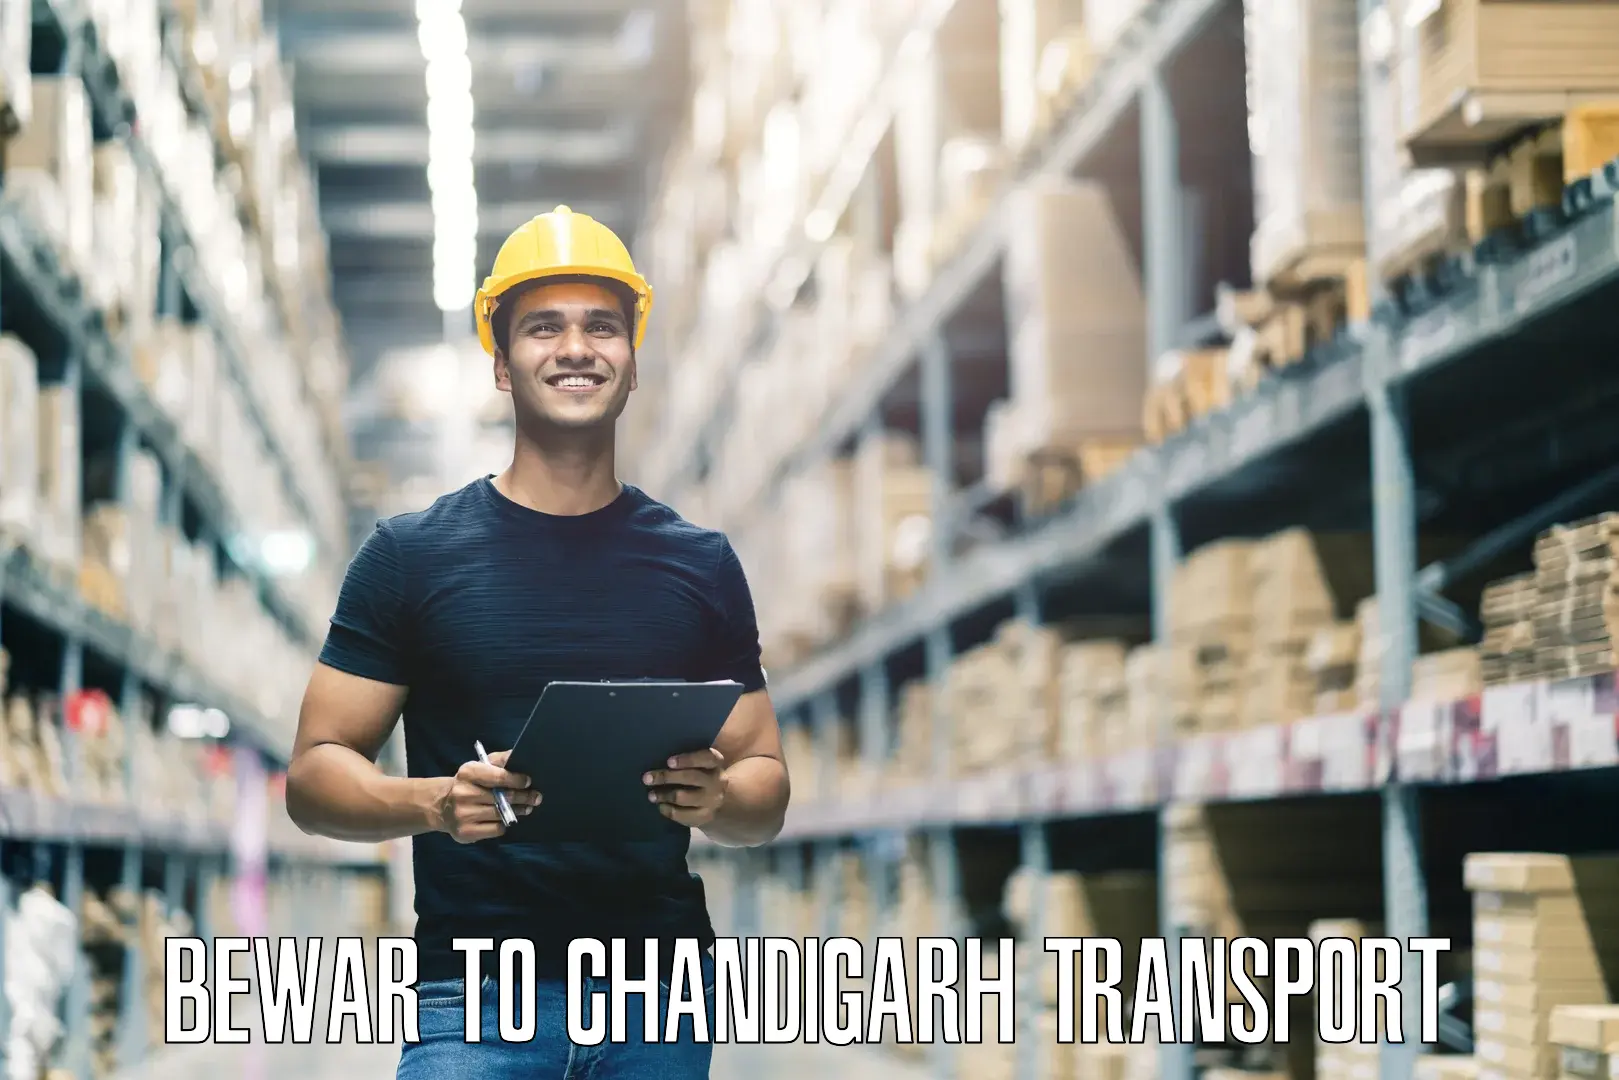 Road transport online services Bewar to Chandigarh